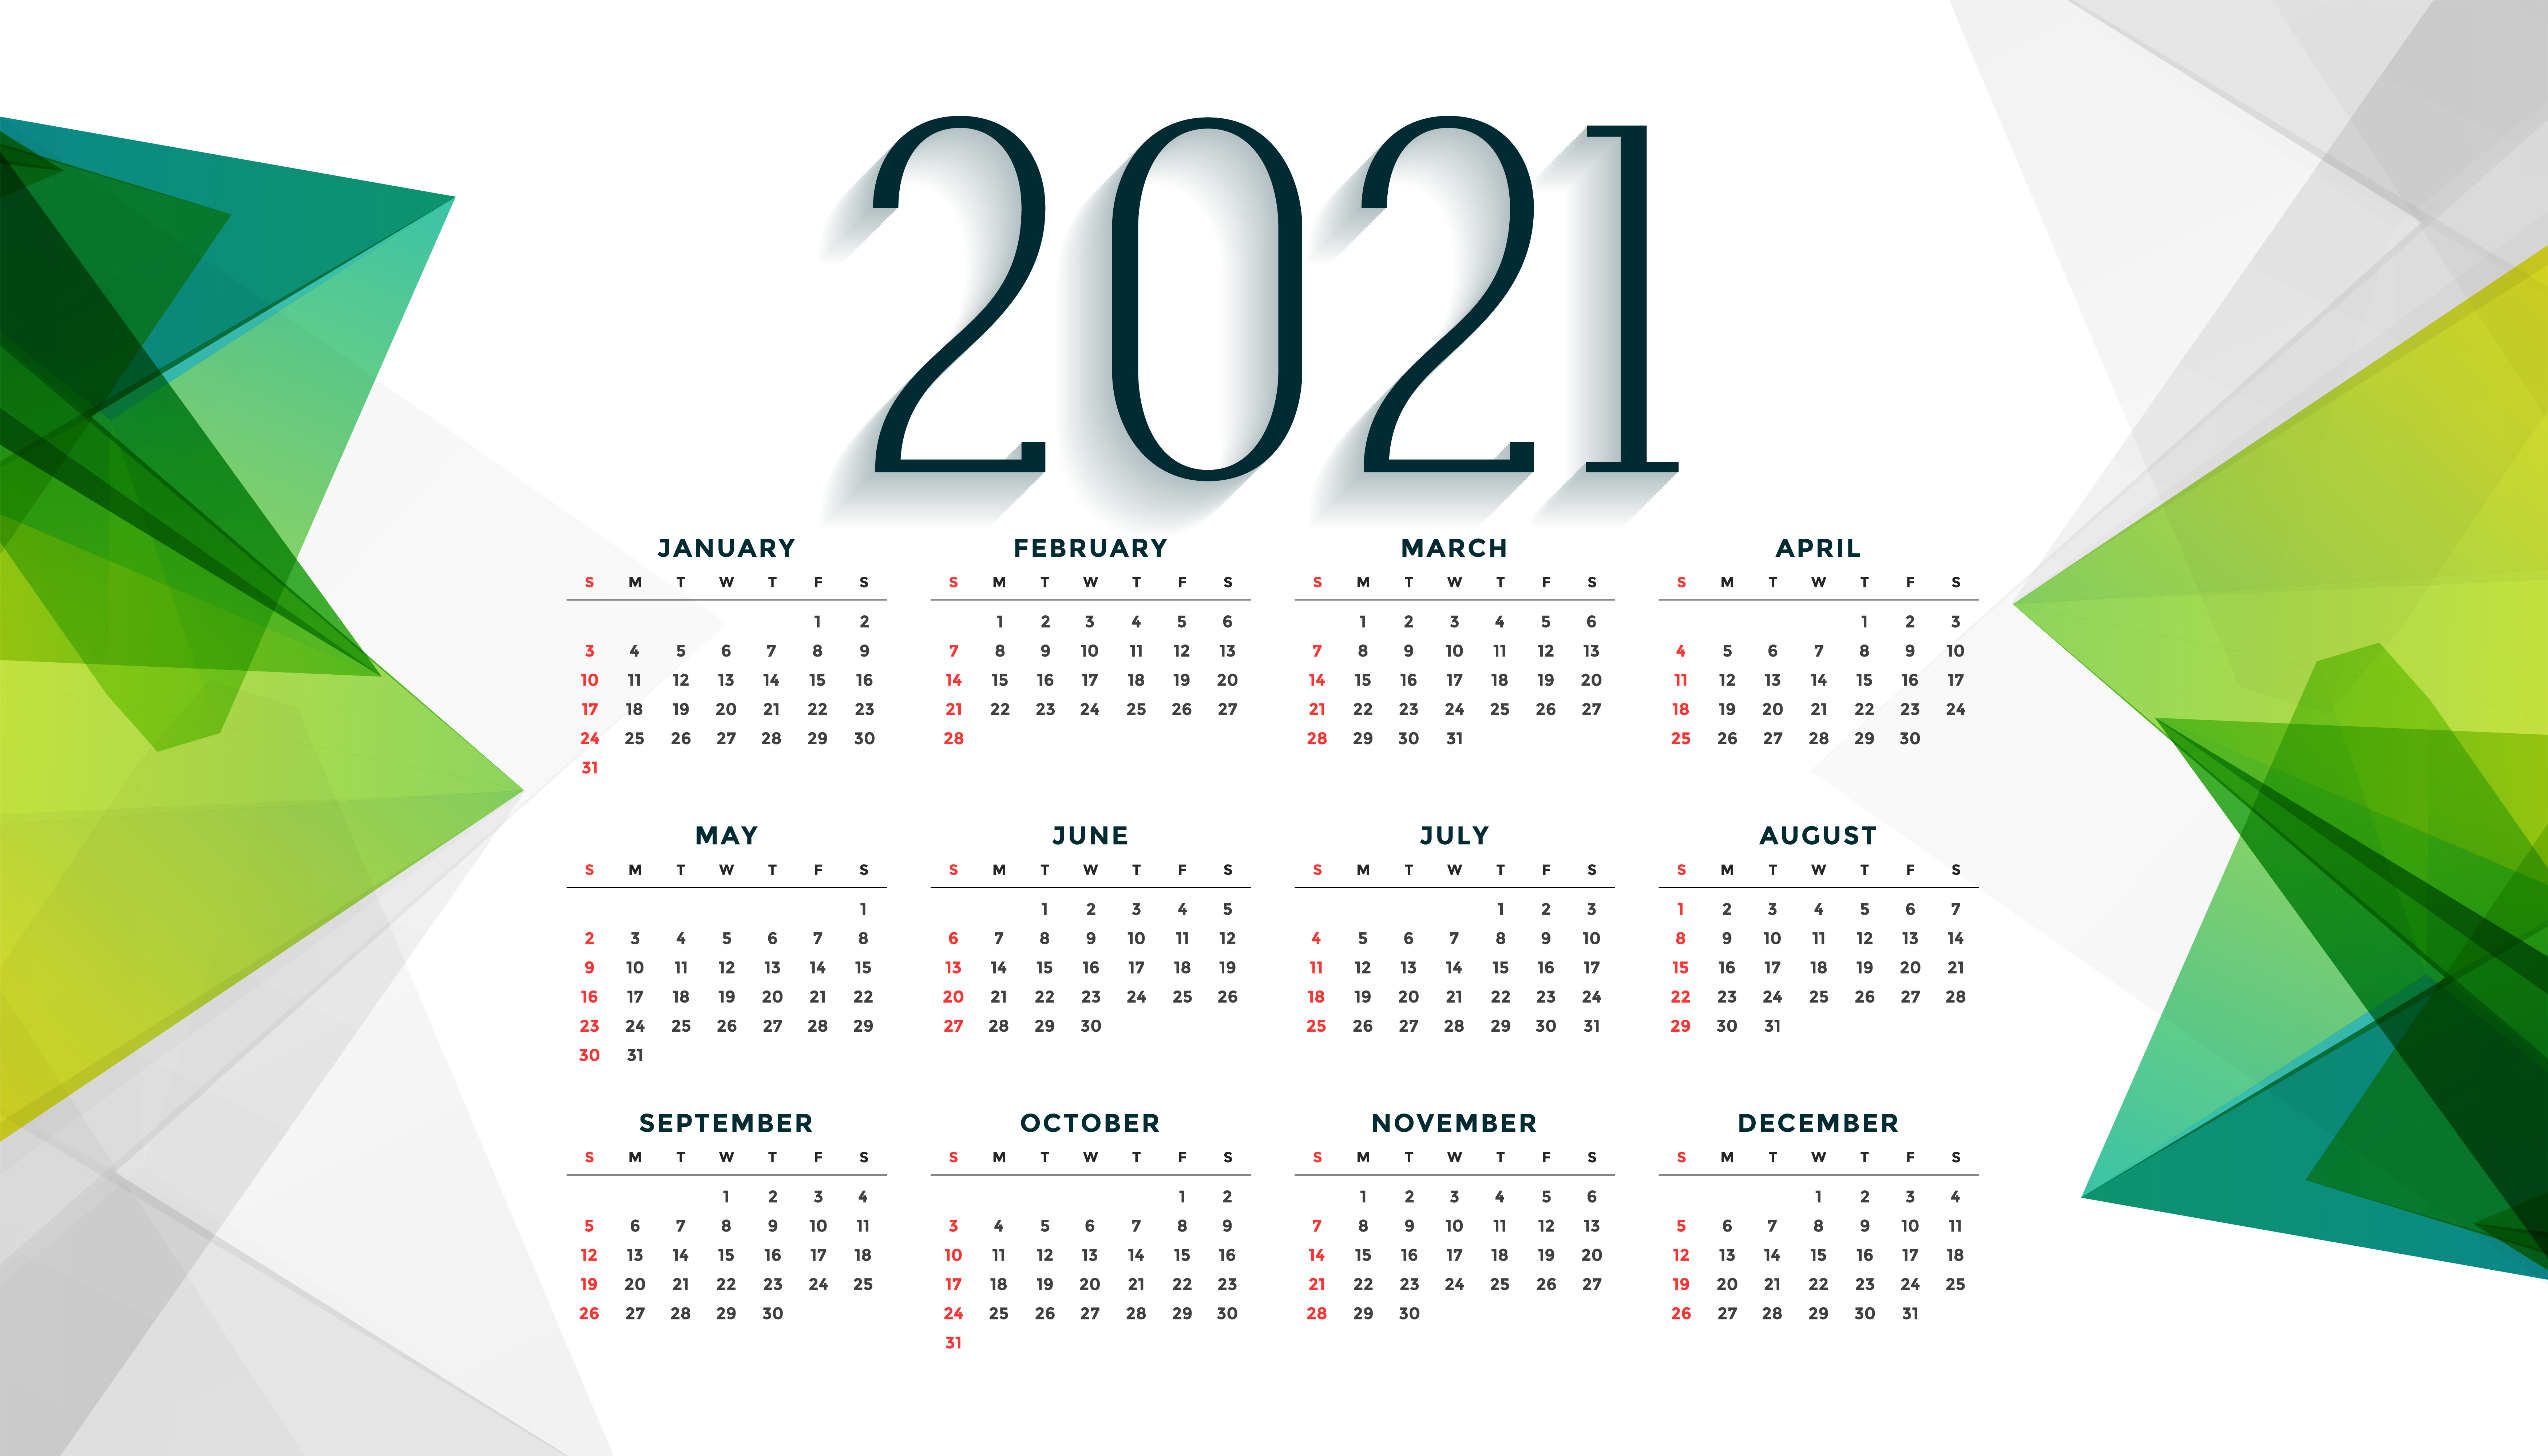 2021年日历大图打印版图片